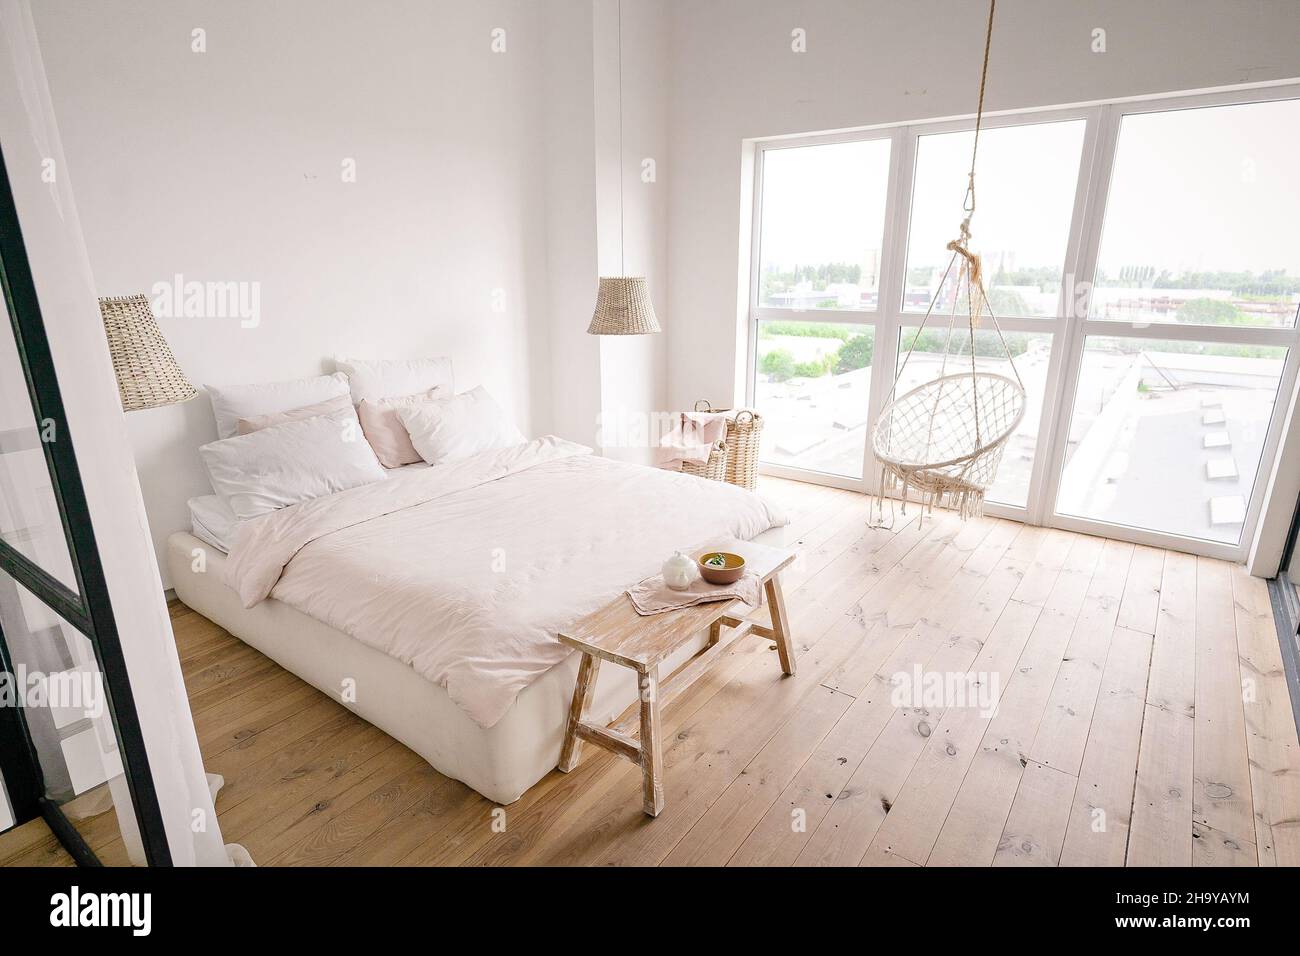 Großes helles Schlafzimmer in minimalistischem Stil in Pastelltönen mit Doppelbett, weißen Wänden, einem Wicker-Wäschekorb, Korbleuchtern, beigefarbener Bettbank, großem Fenster, Boho-Hängestuhl und Holzboden. . Hochwertige Fotos Stockfoto